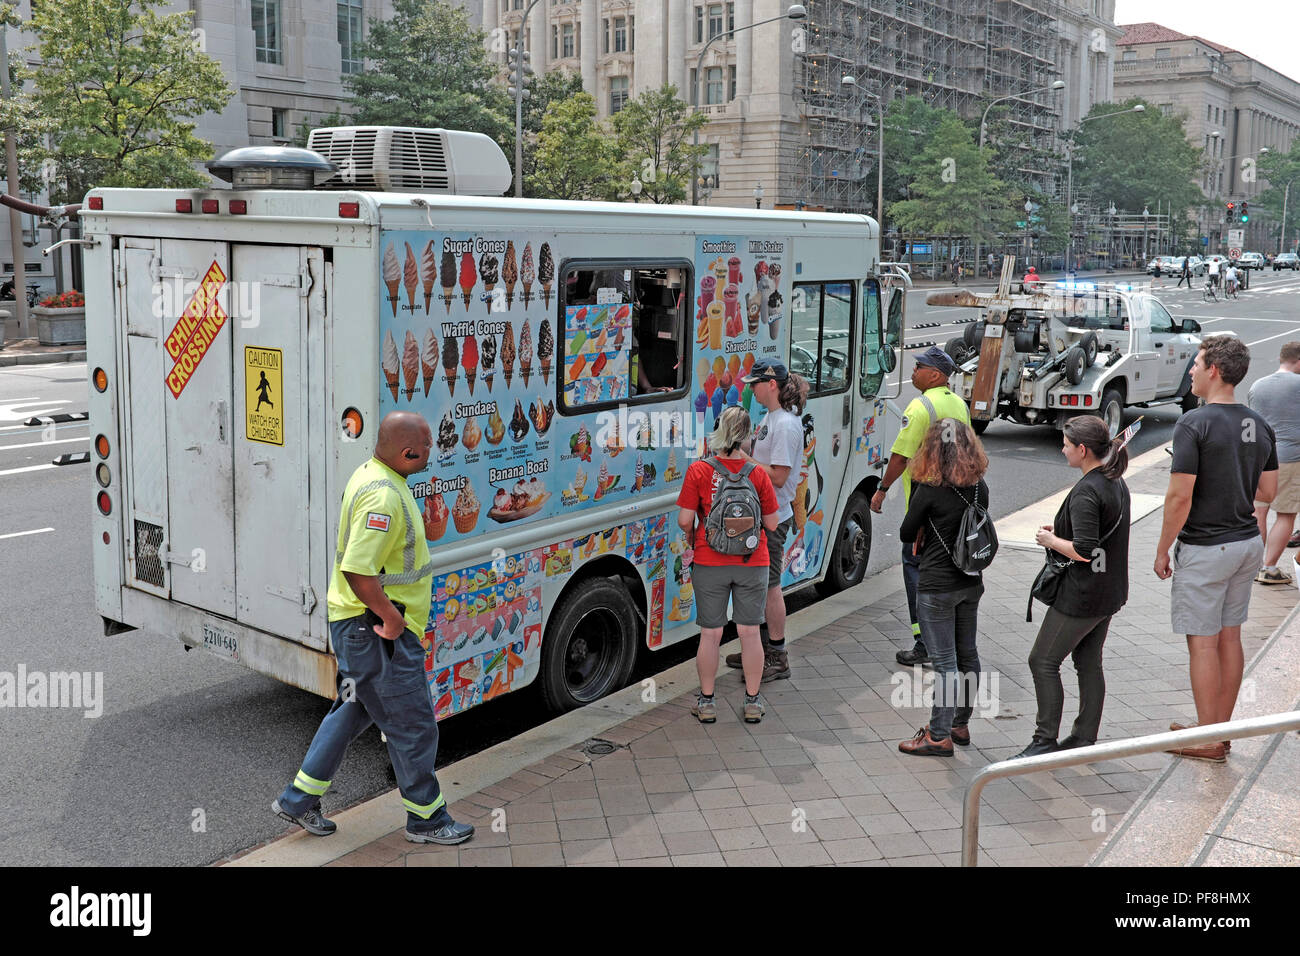 Le temps chaud à Washington DC en août attire les gens au camion de crème glacée pour se rafraîchir. En raison de son emplacement, le camion est cité et remorqué. Banque D'Images